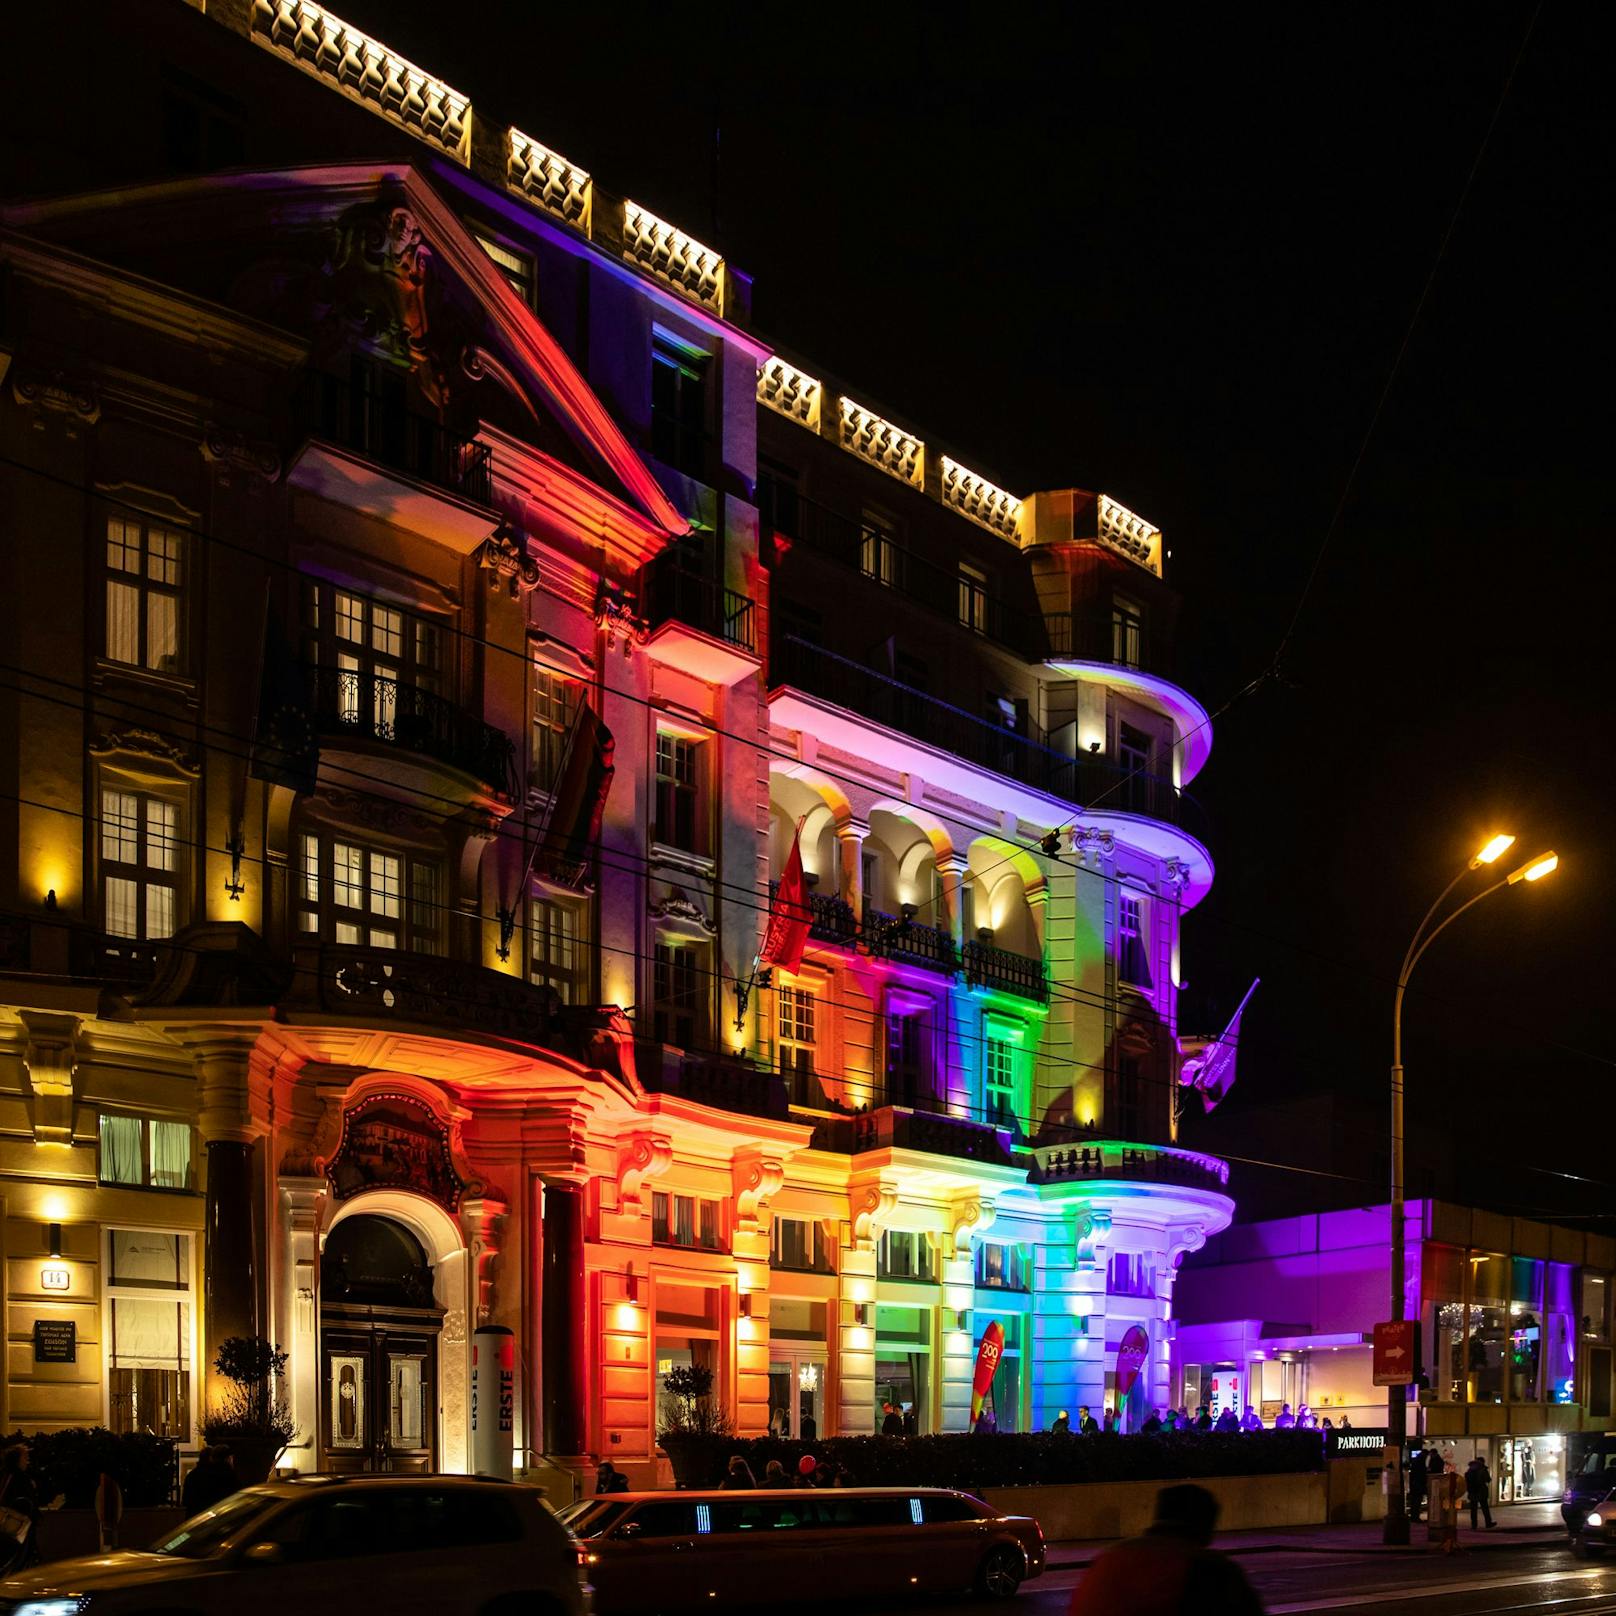 Das Parkhotel Schönbrunn wird am 28. Jänner 2023 in den Farben des Regenbogens erstrahlen.